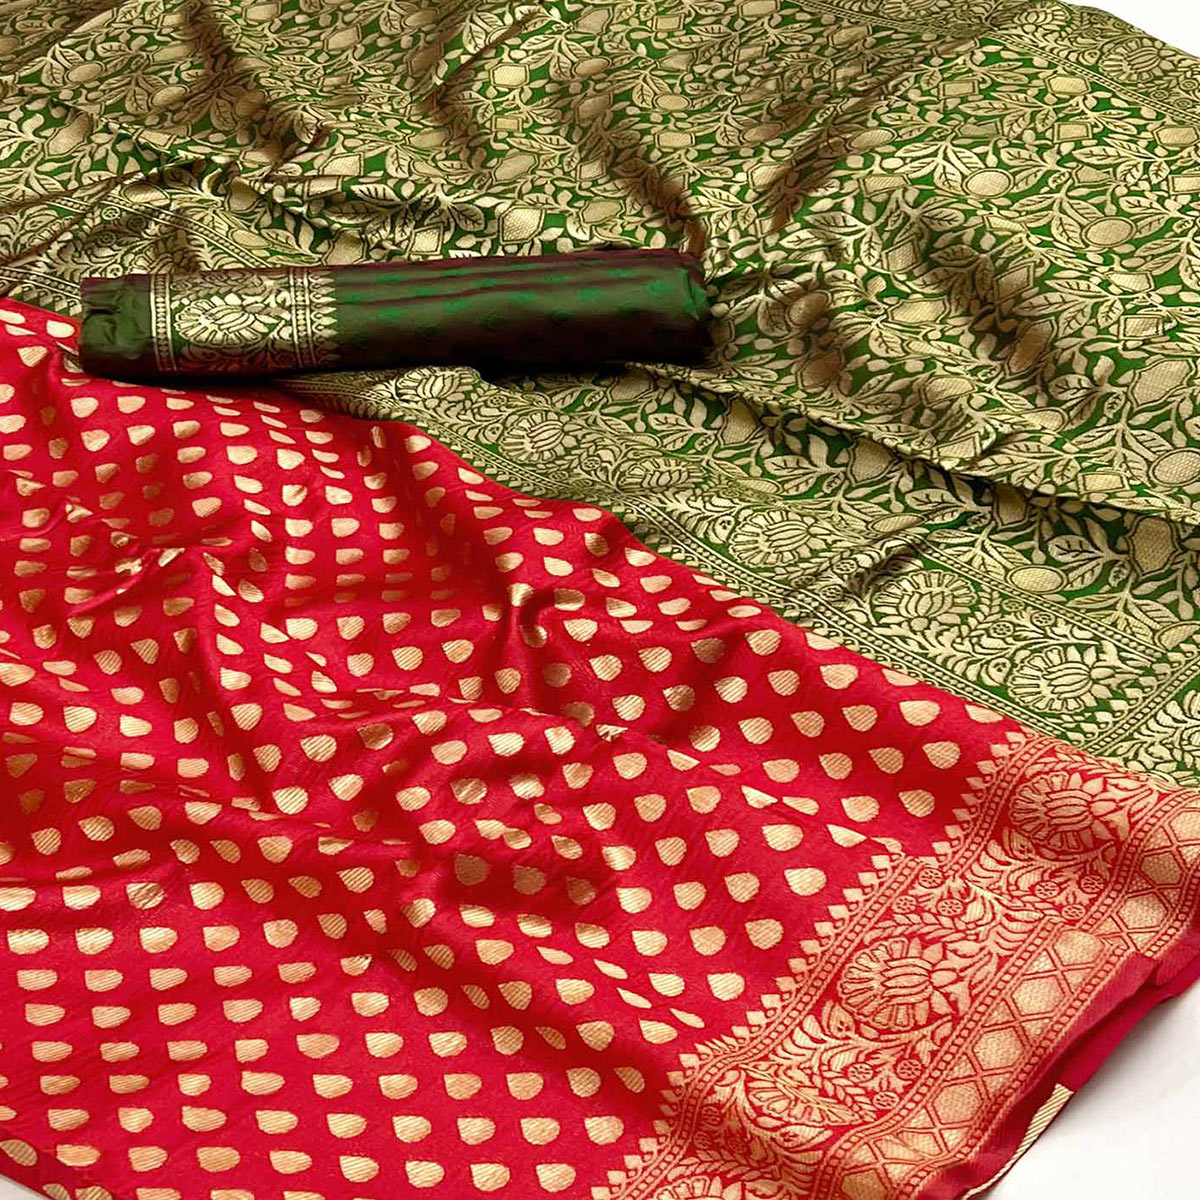 Red Floral Woven Banarasi Silk Saree